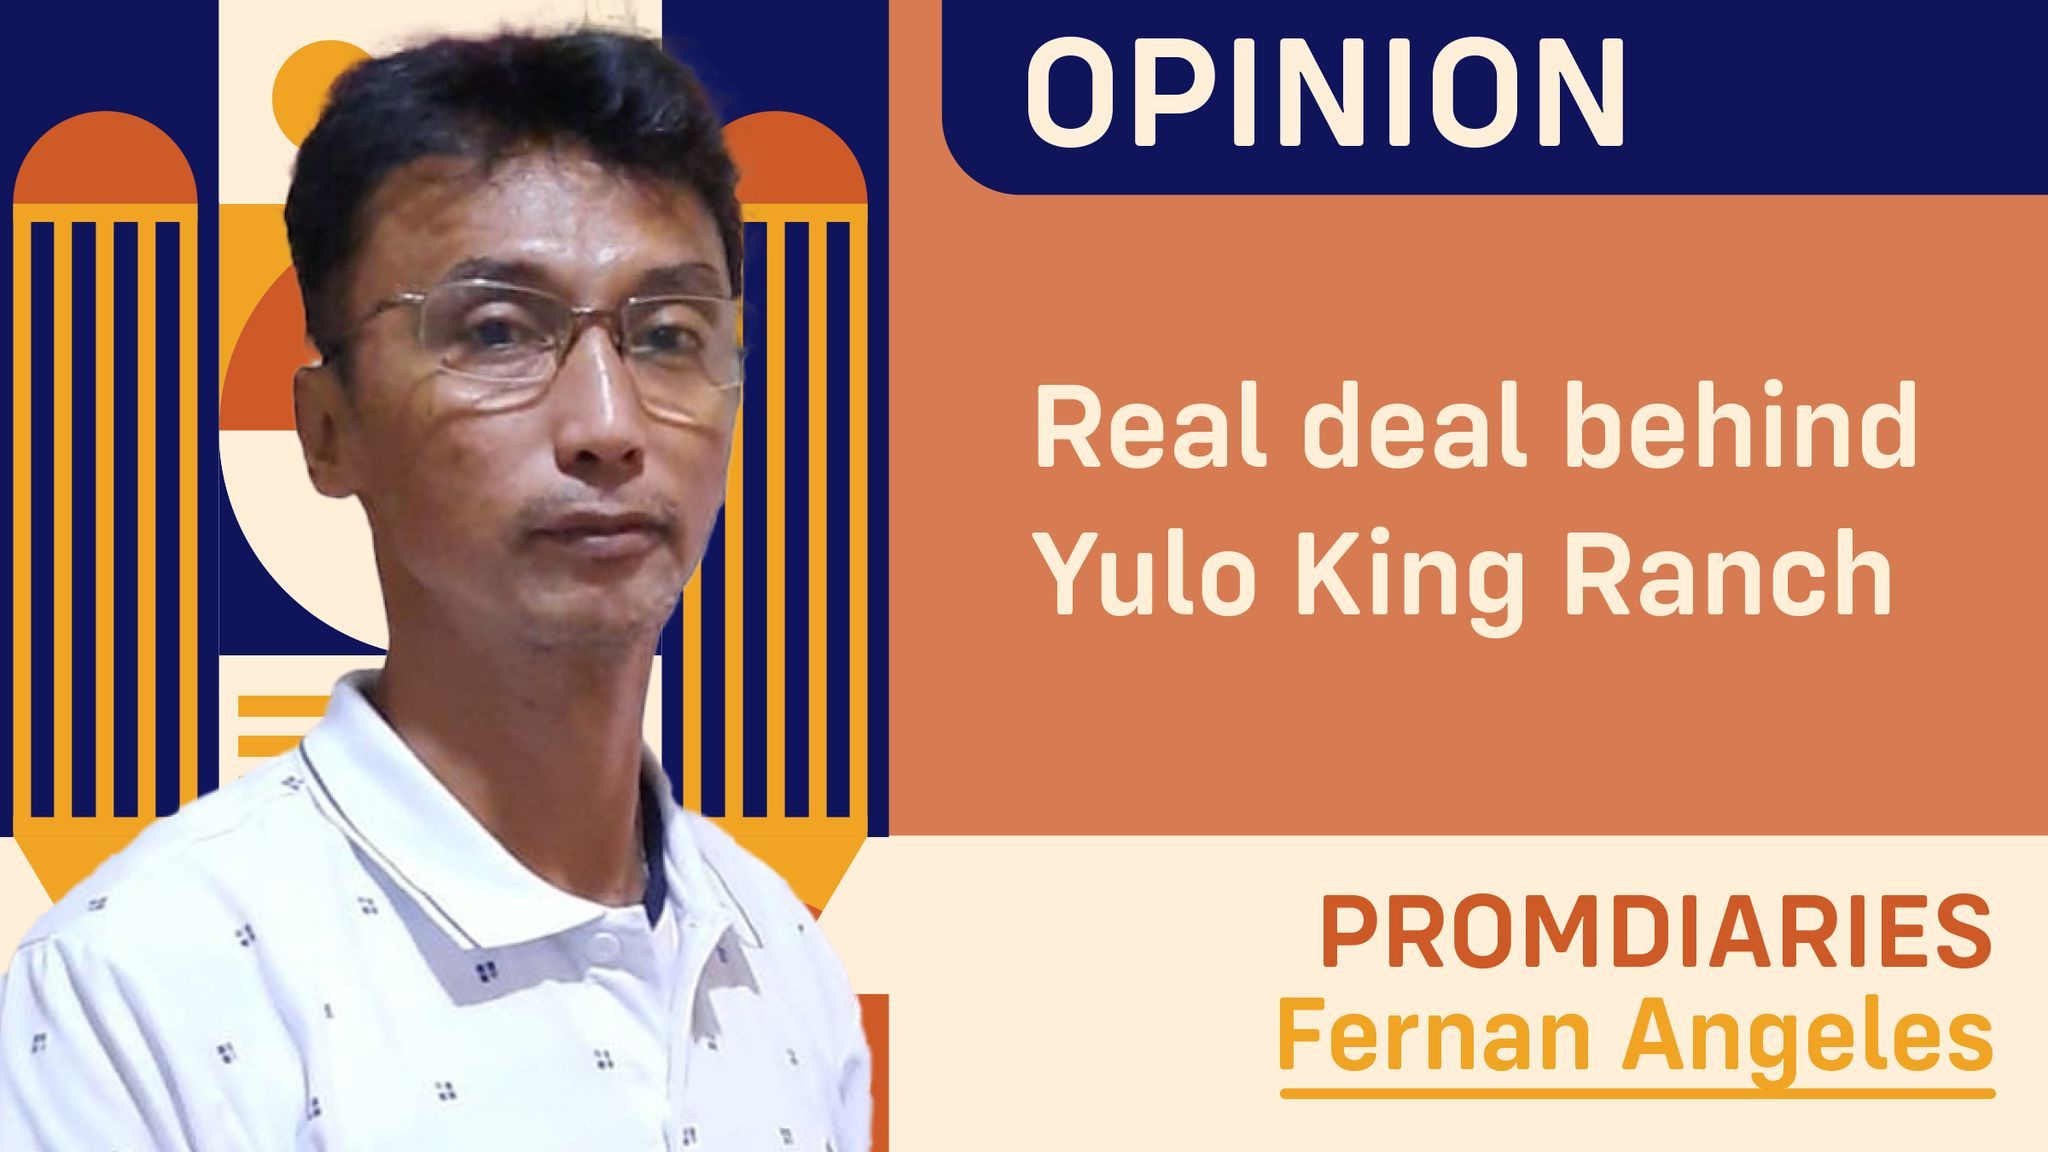 Real deal behind yulo king ranch